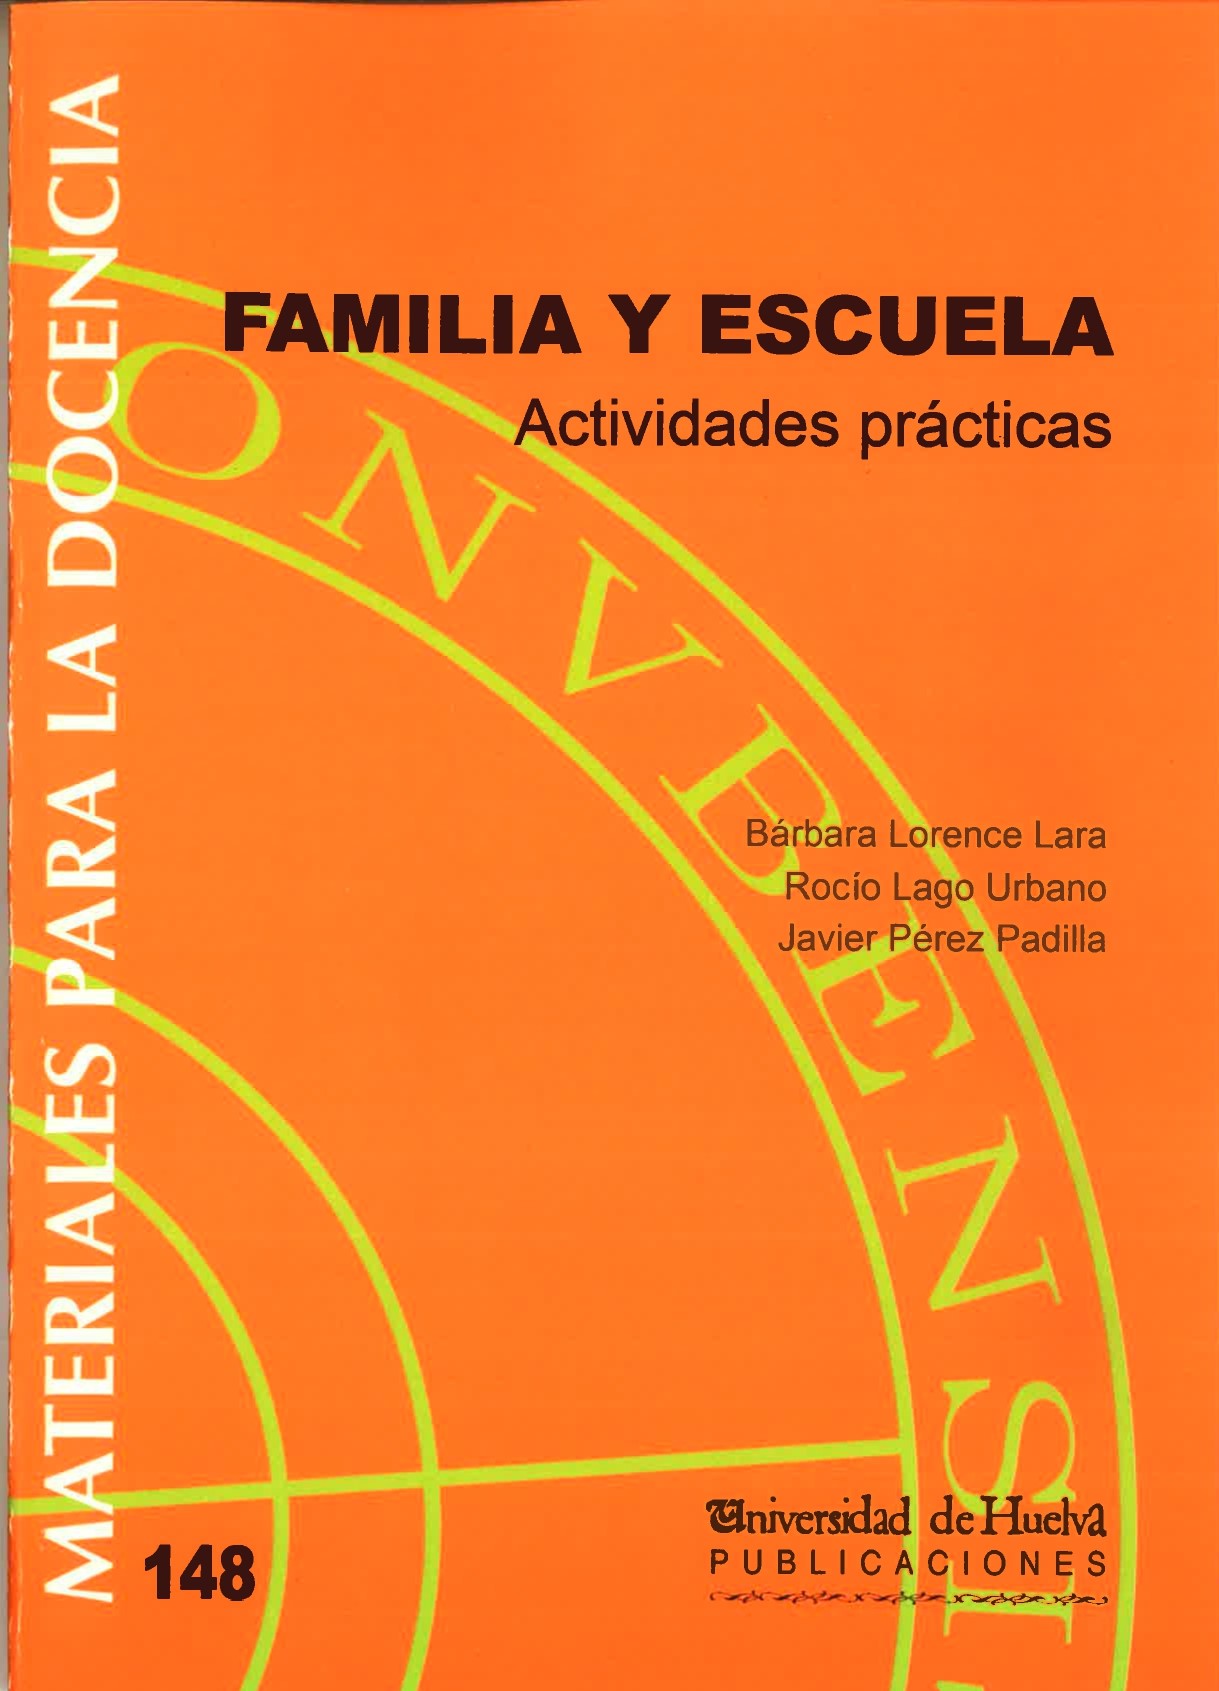 Imagen de portada del libro Familia y Escuela